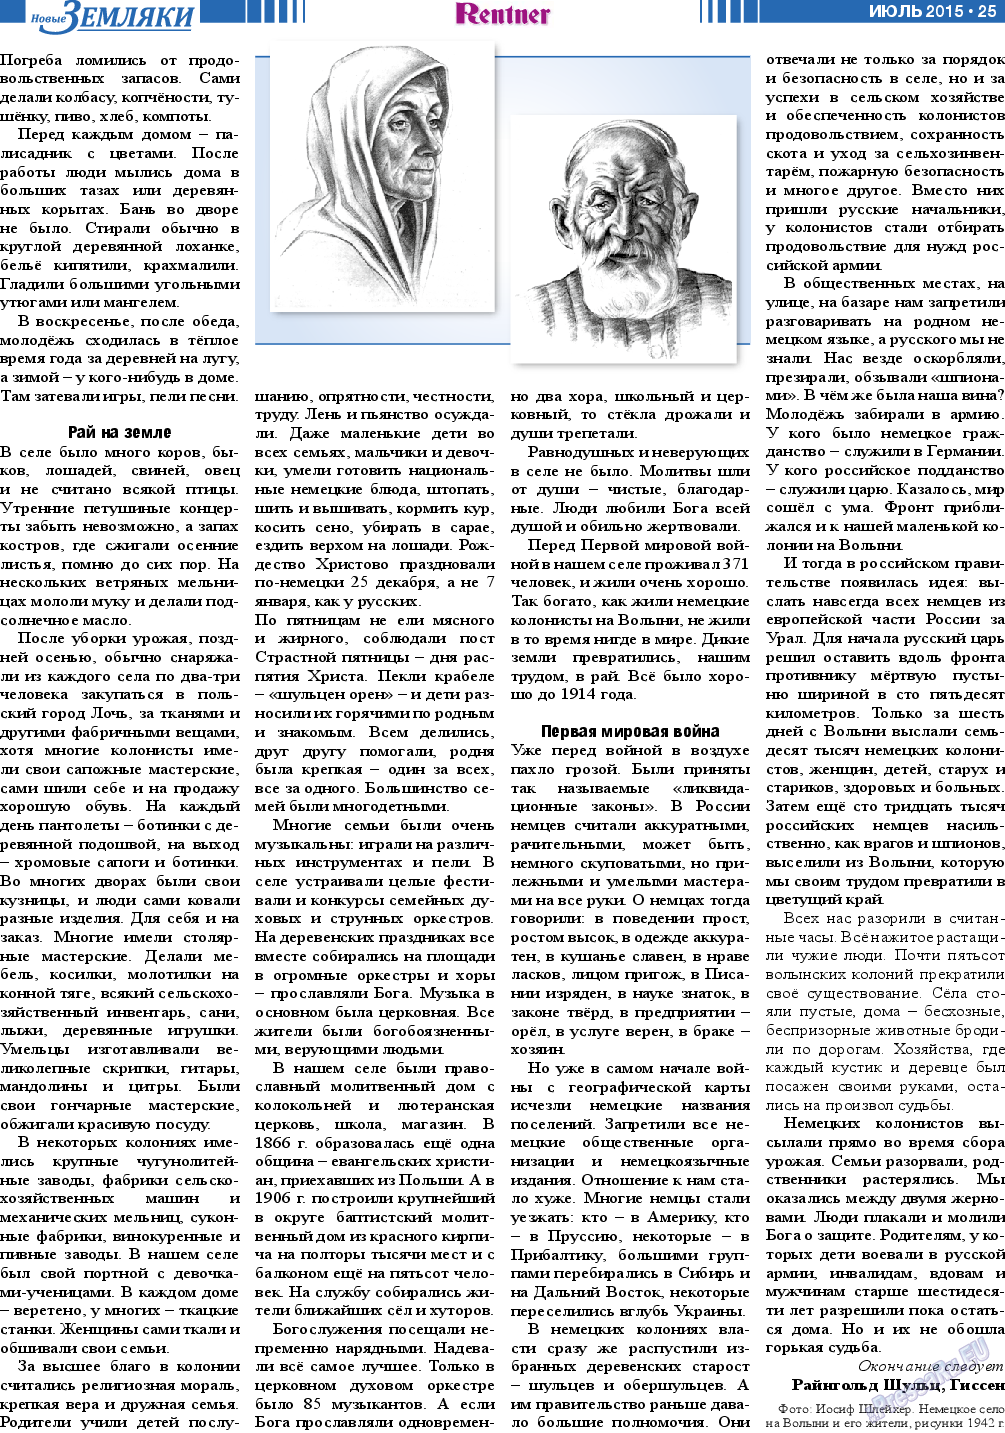 Новые Земляки (газета). 2015 год, номер 7, стр. 25